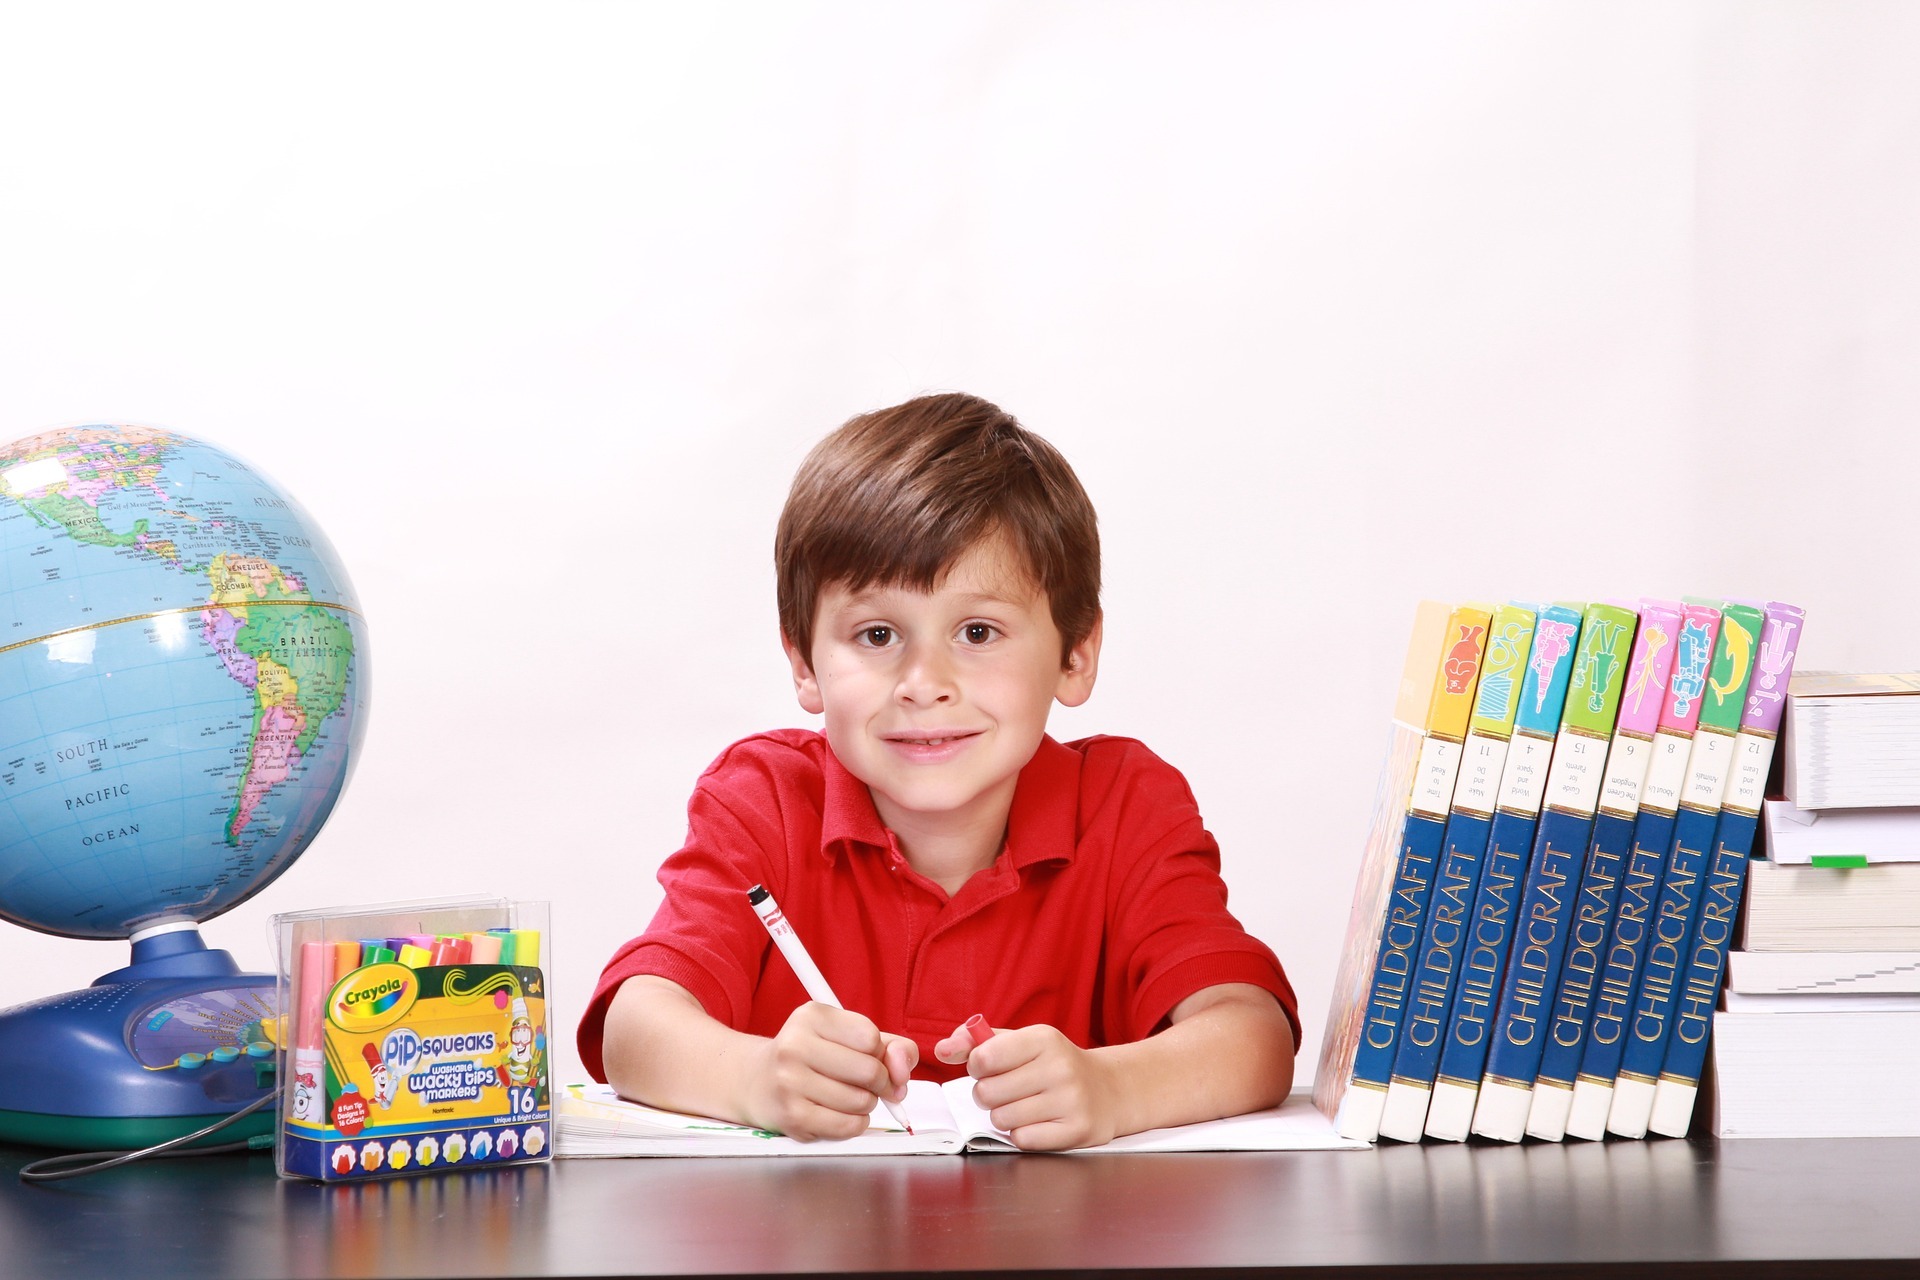 A boy holding a pen